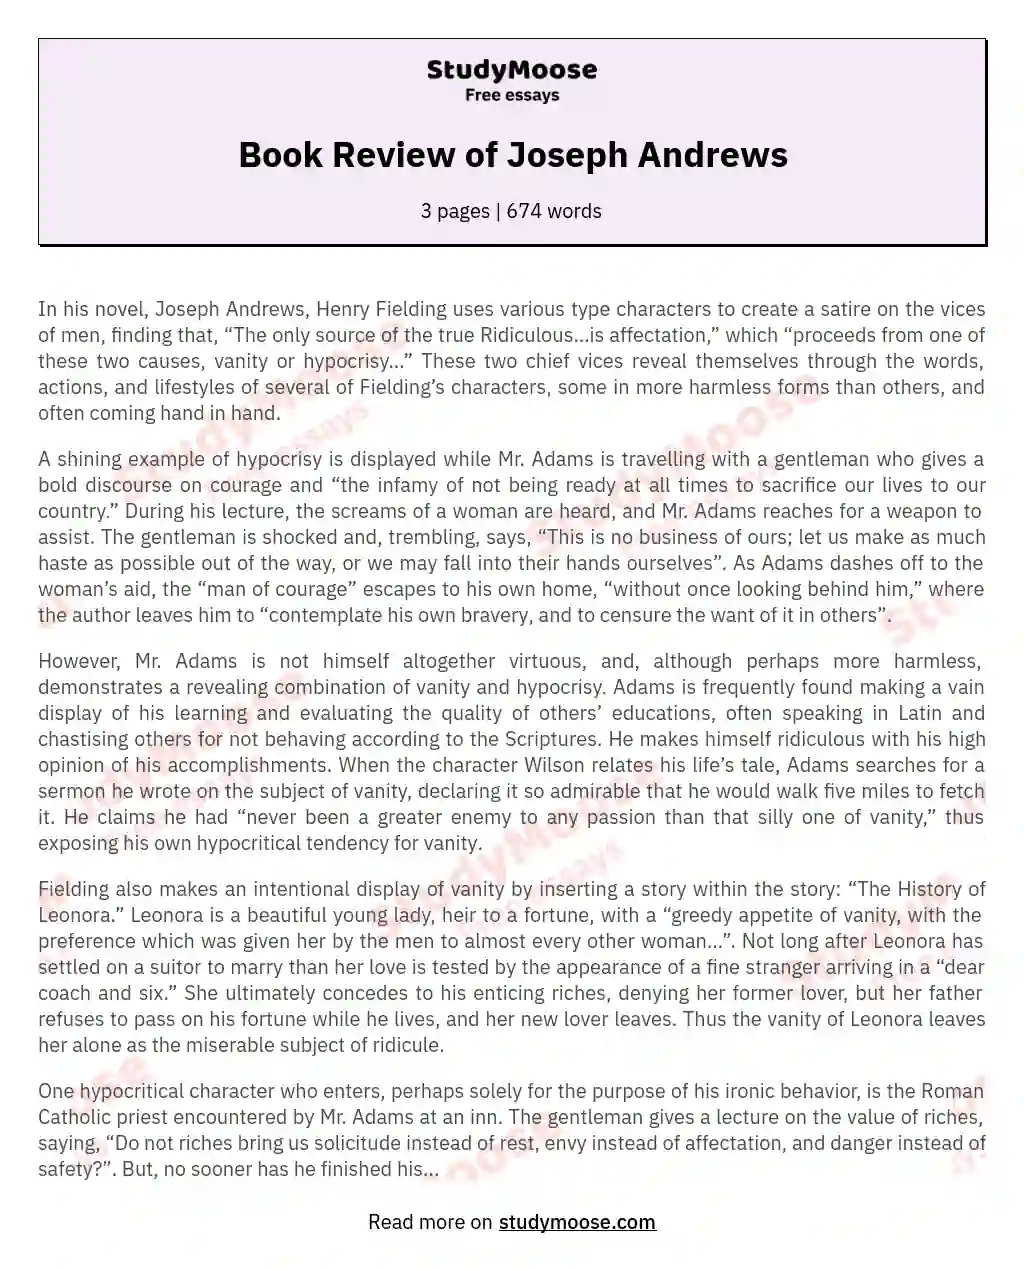 Book Review of Joseph Andrews essay